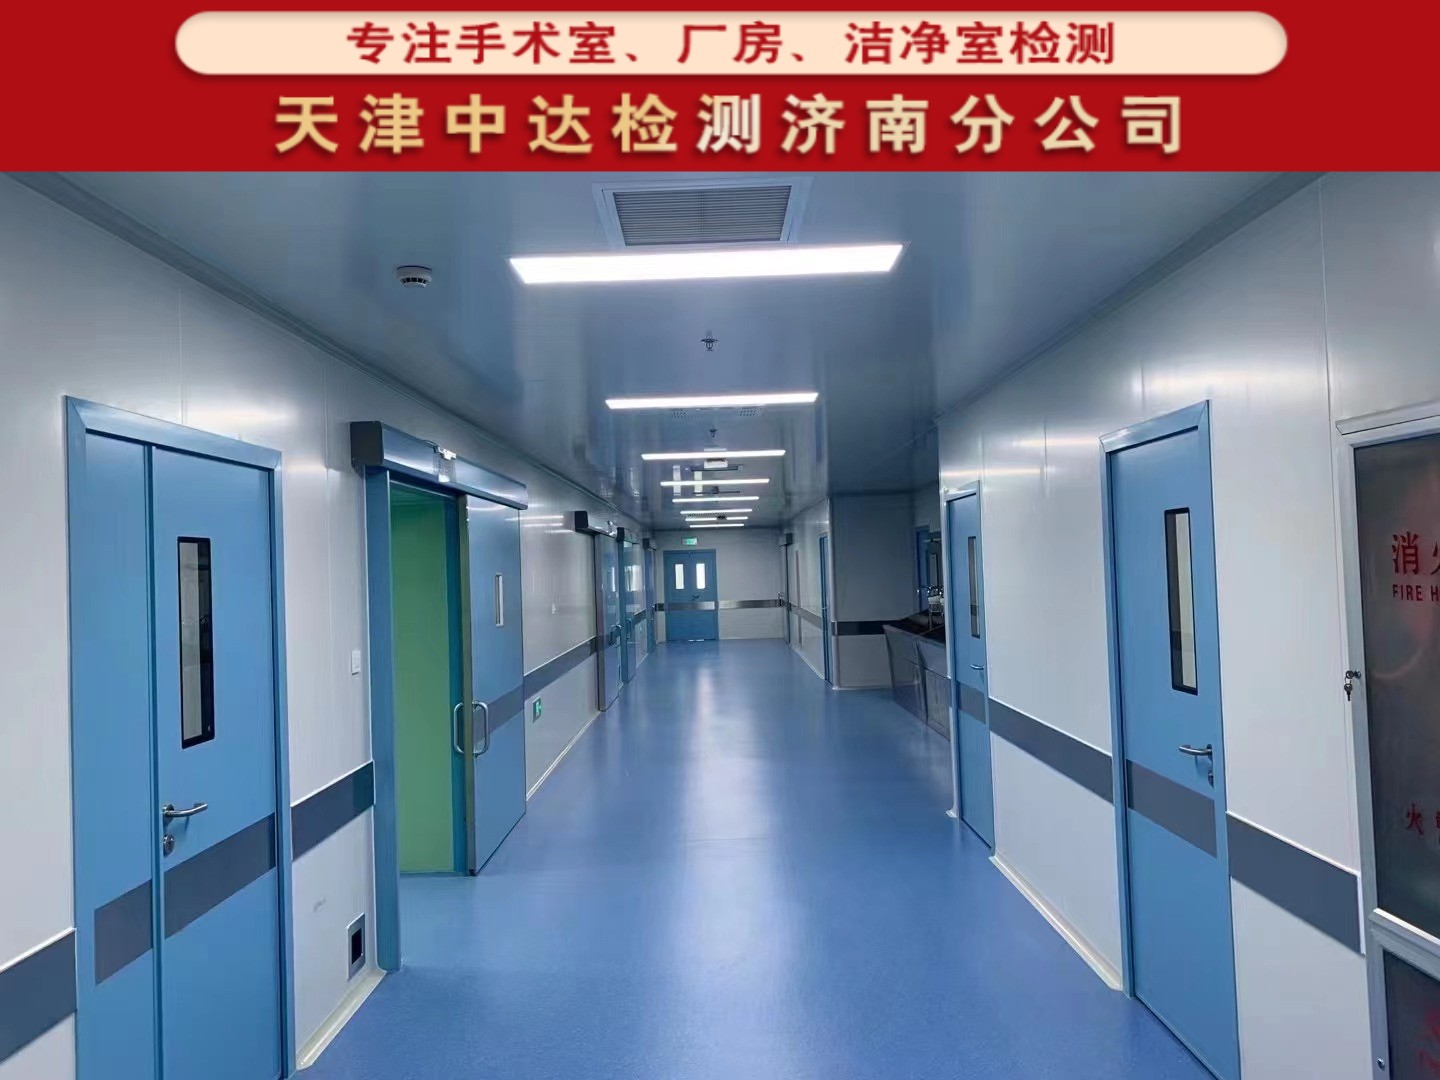 青岛胶州市千级手术室验收检测方法-天津中达检测济南分公司